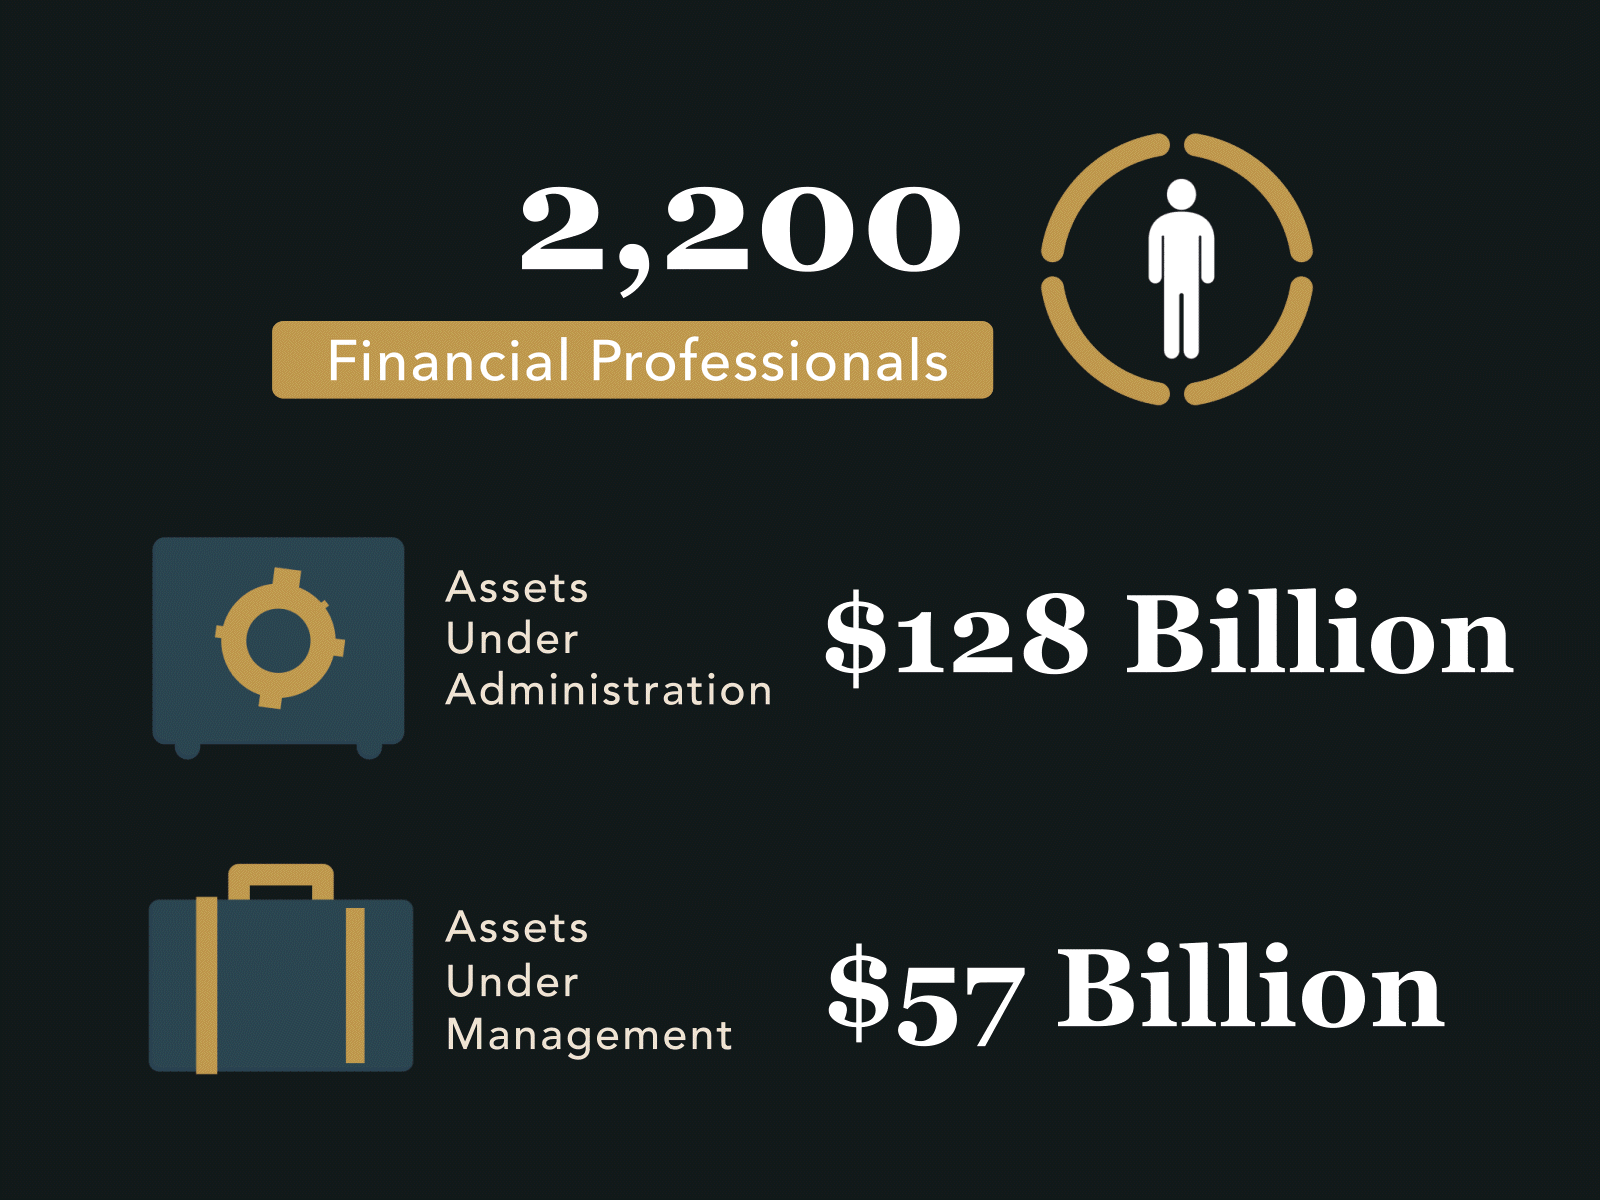 Financial Professionals